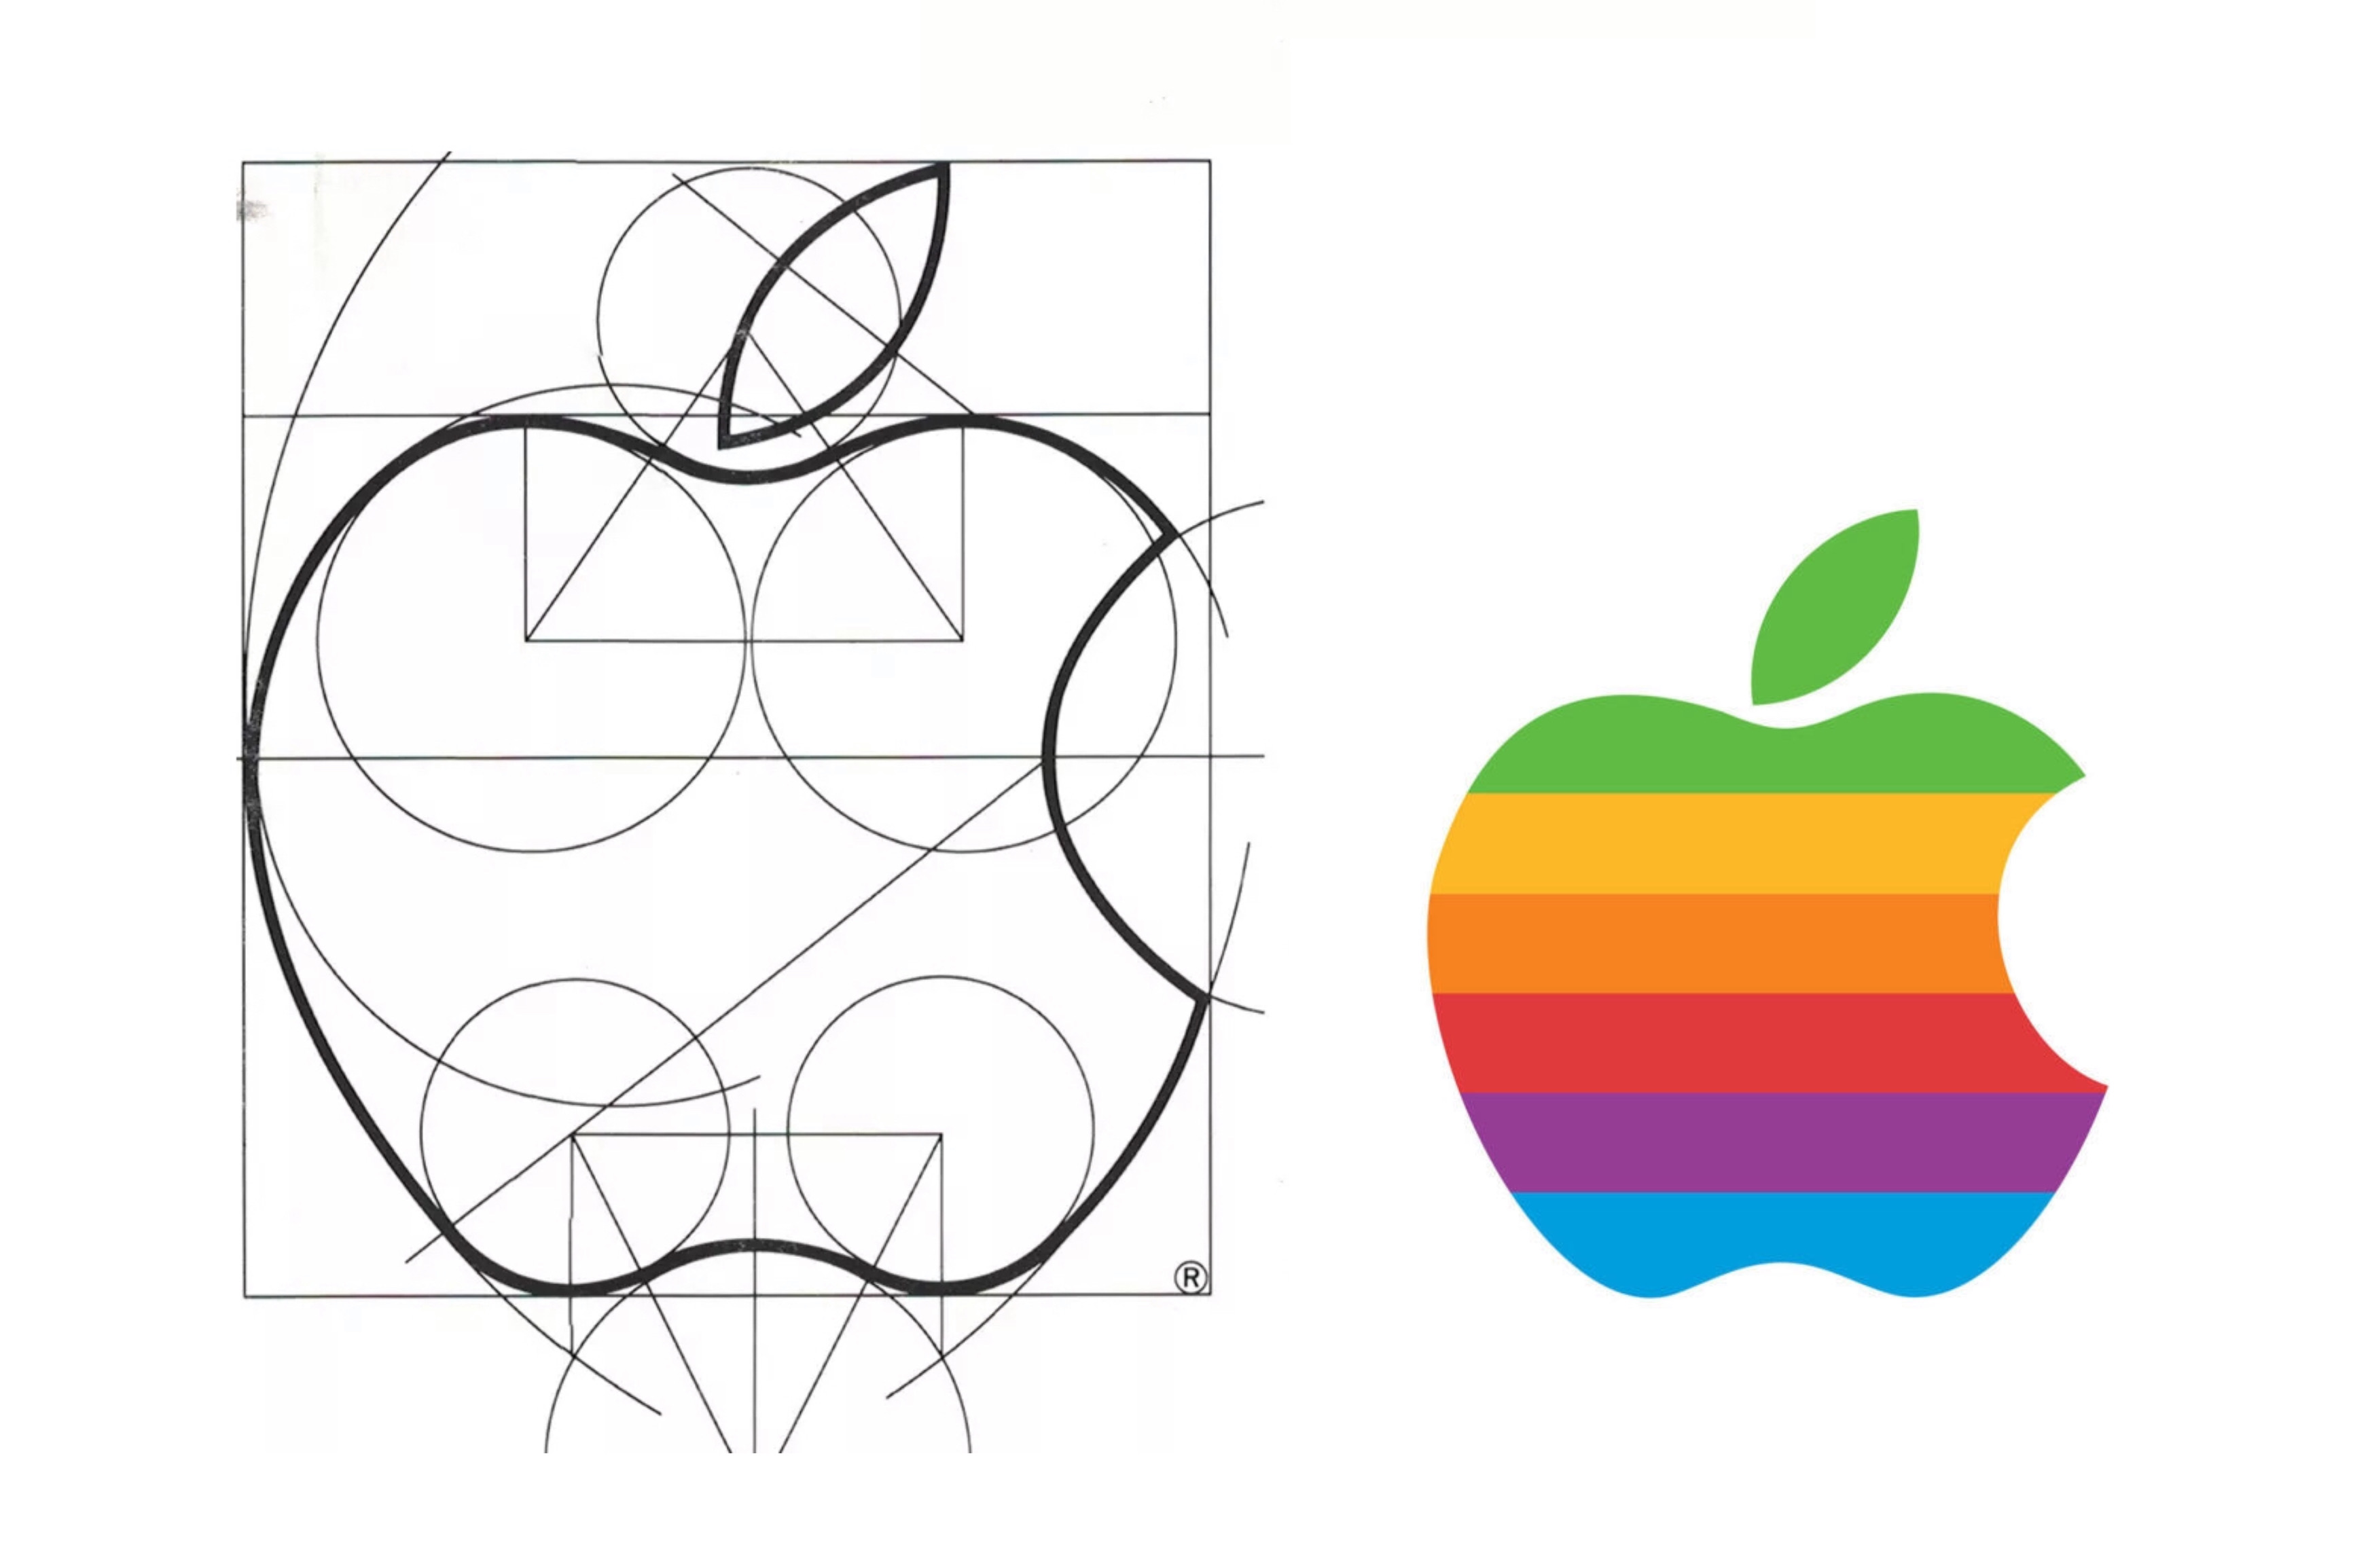 第一个apple标志设计很容易识别,但它没有产生很大的影响.